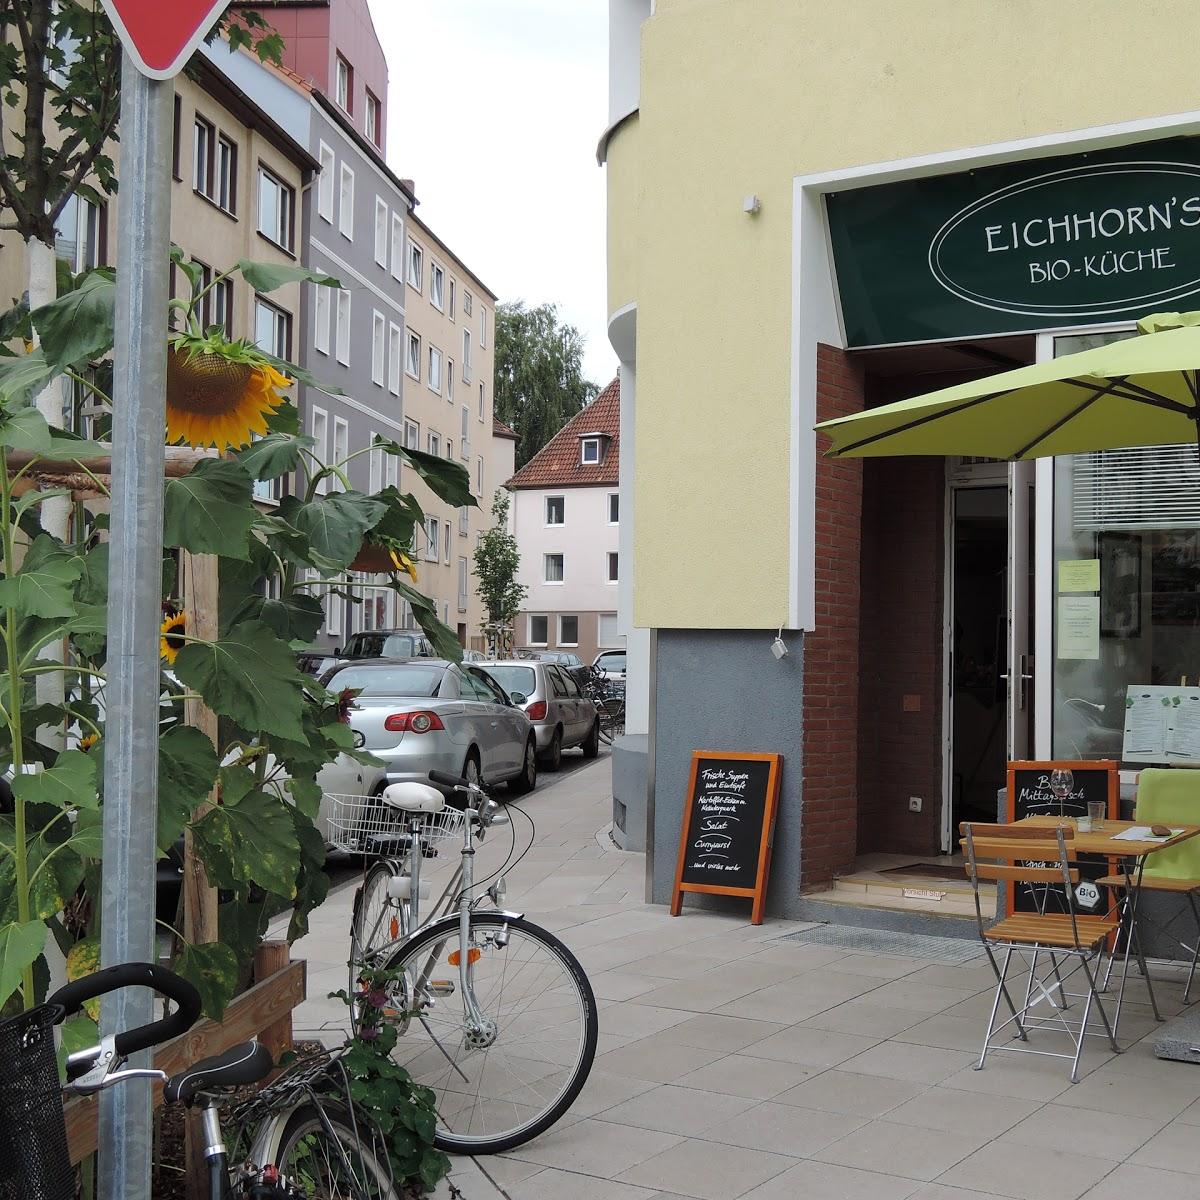 Restaurant "Eichhorn